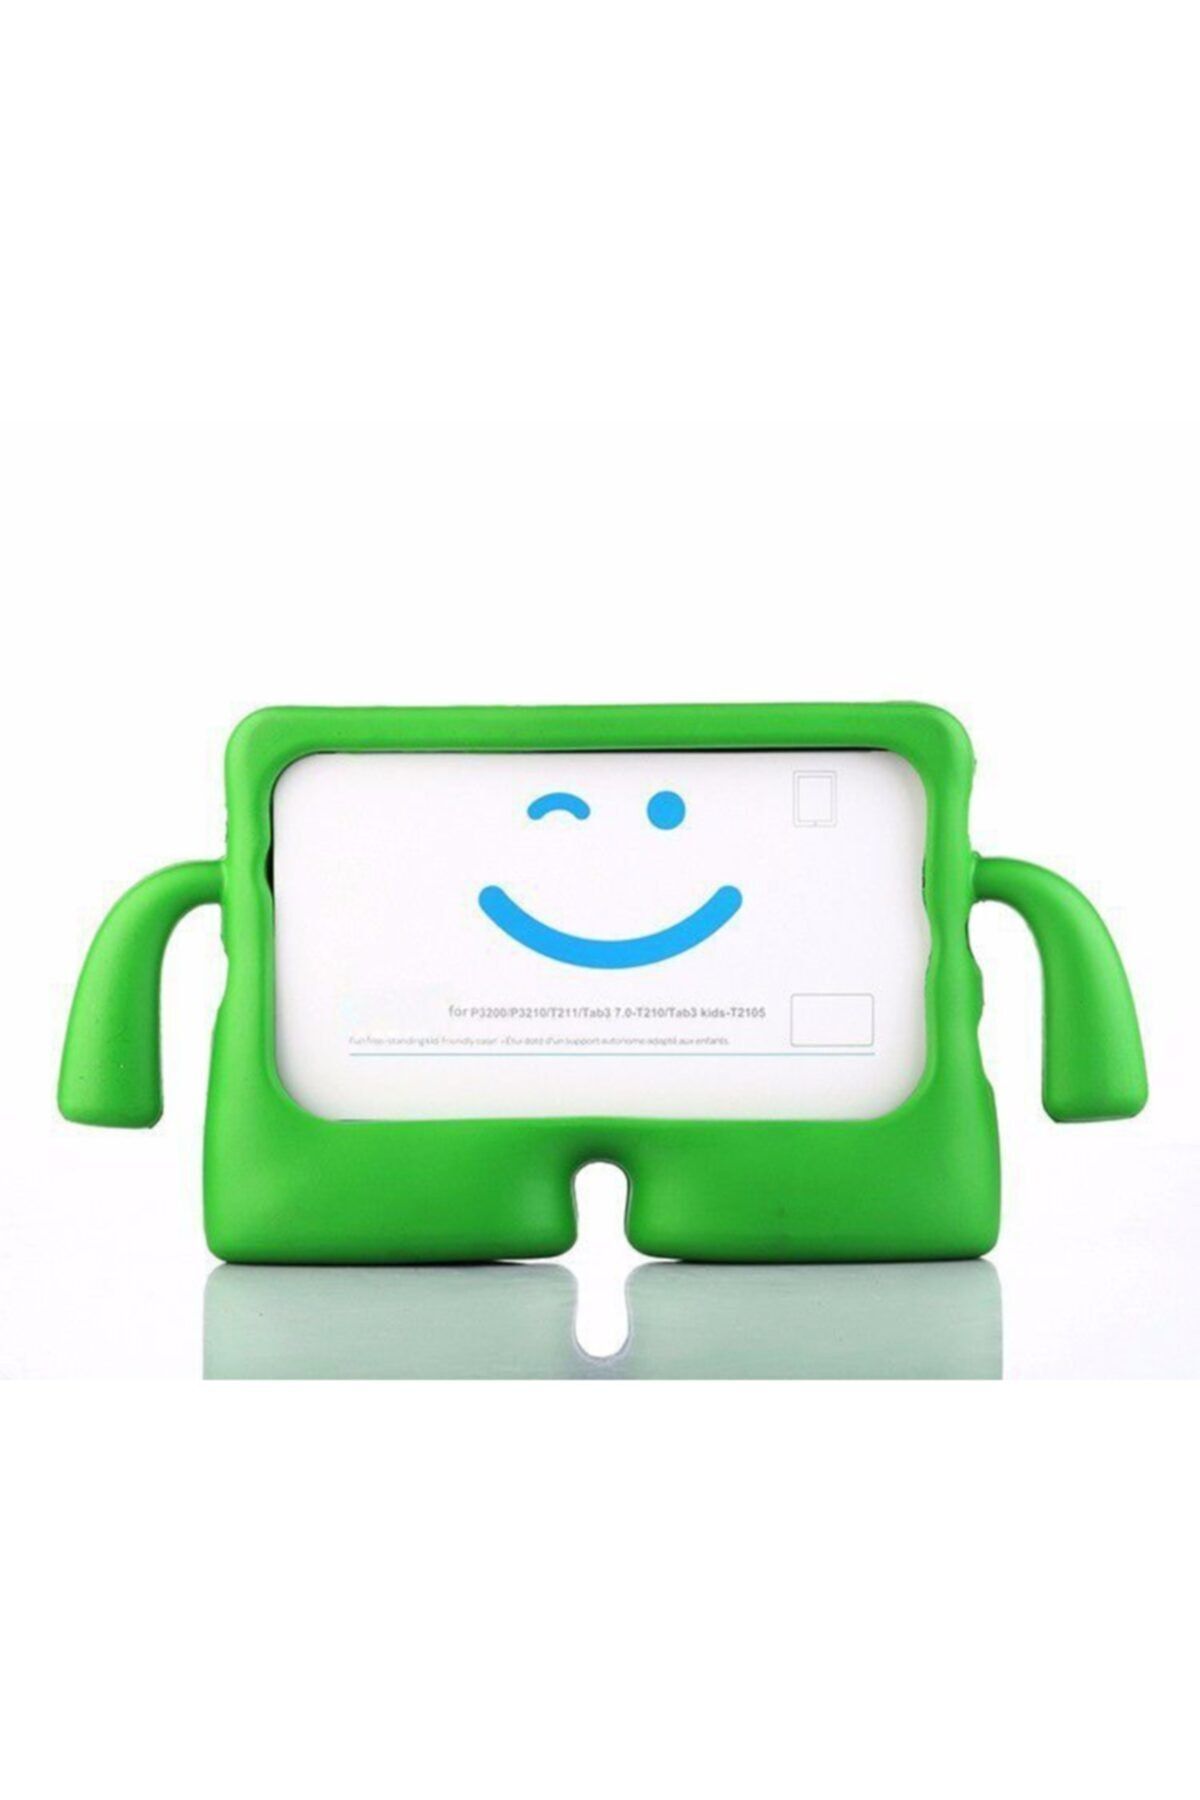 Zipax Apple Ipad Air 3 10.2 Pro 10.5 2019 Kılıf Çocuklar Için Kollu Silikon - Yeşil